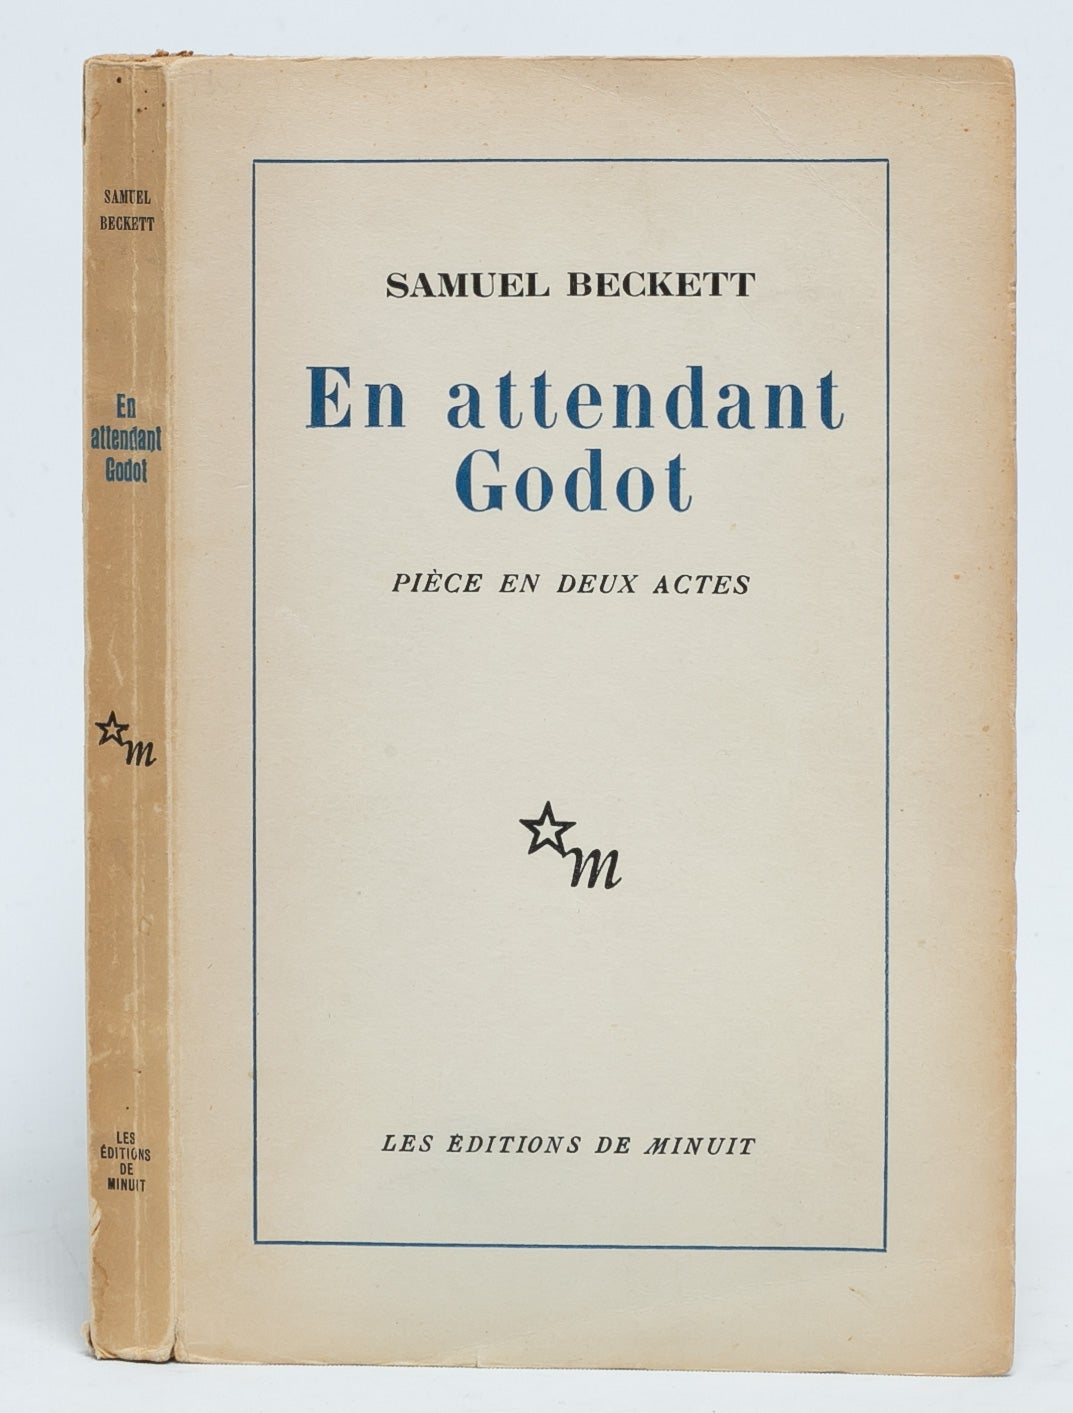 (Item #5980) En attendant Godot [Waiting for Godot]. Samuel Beckett.